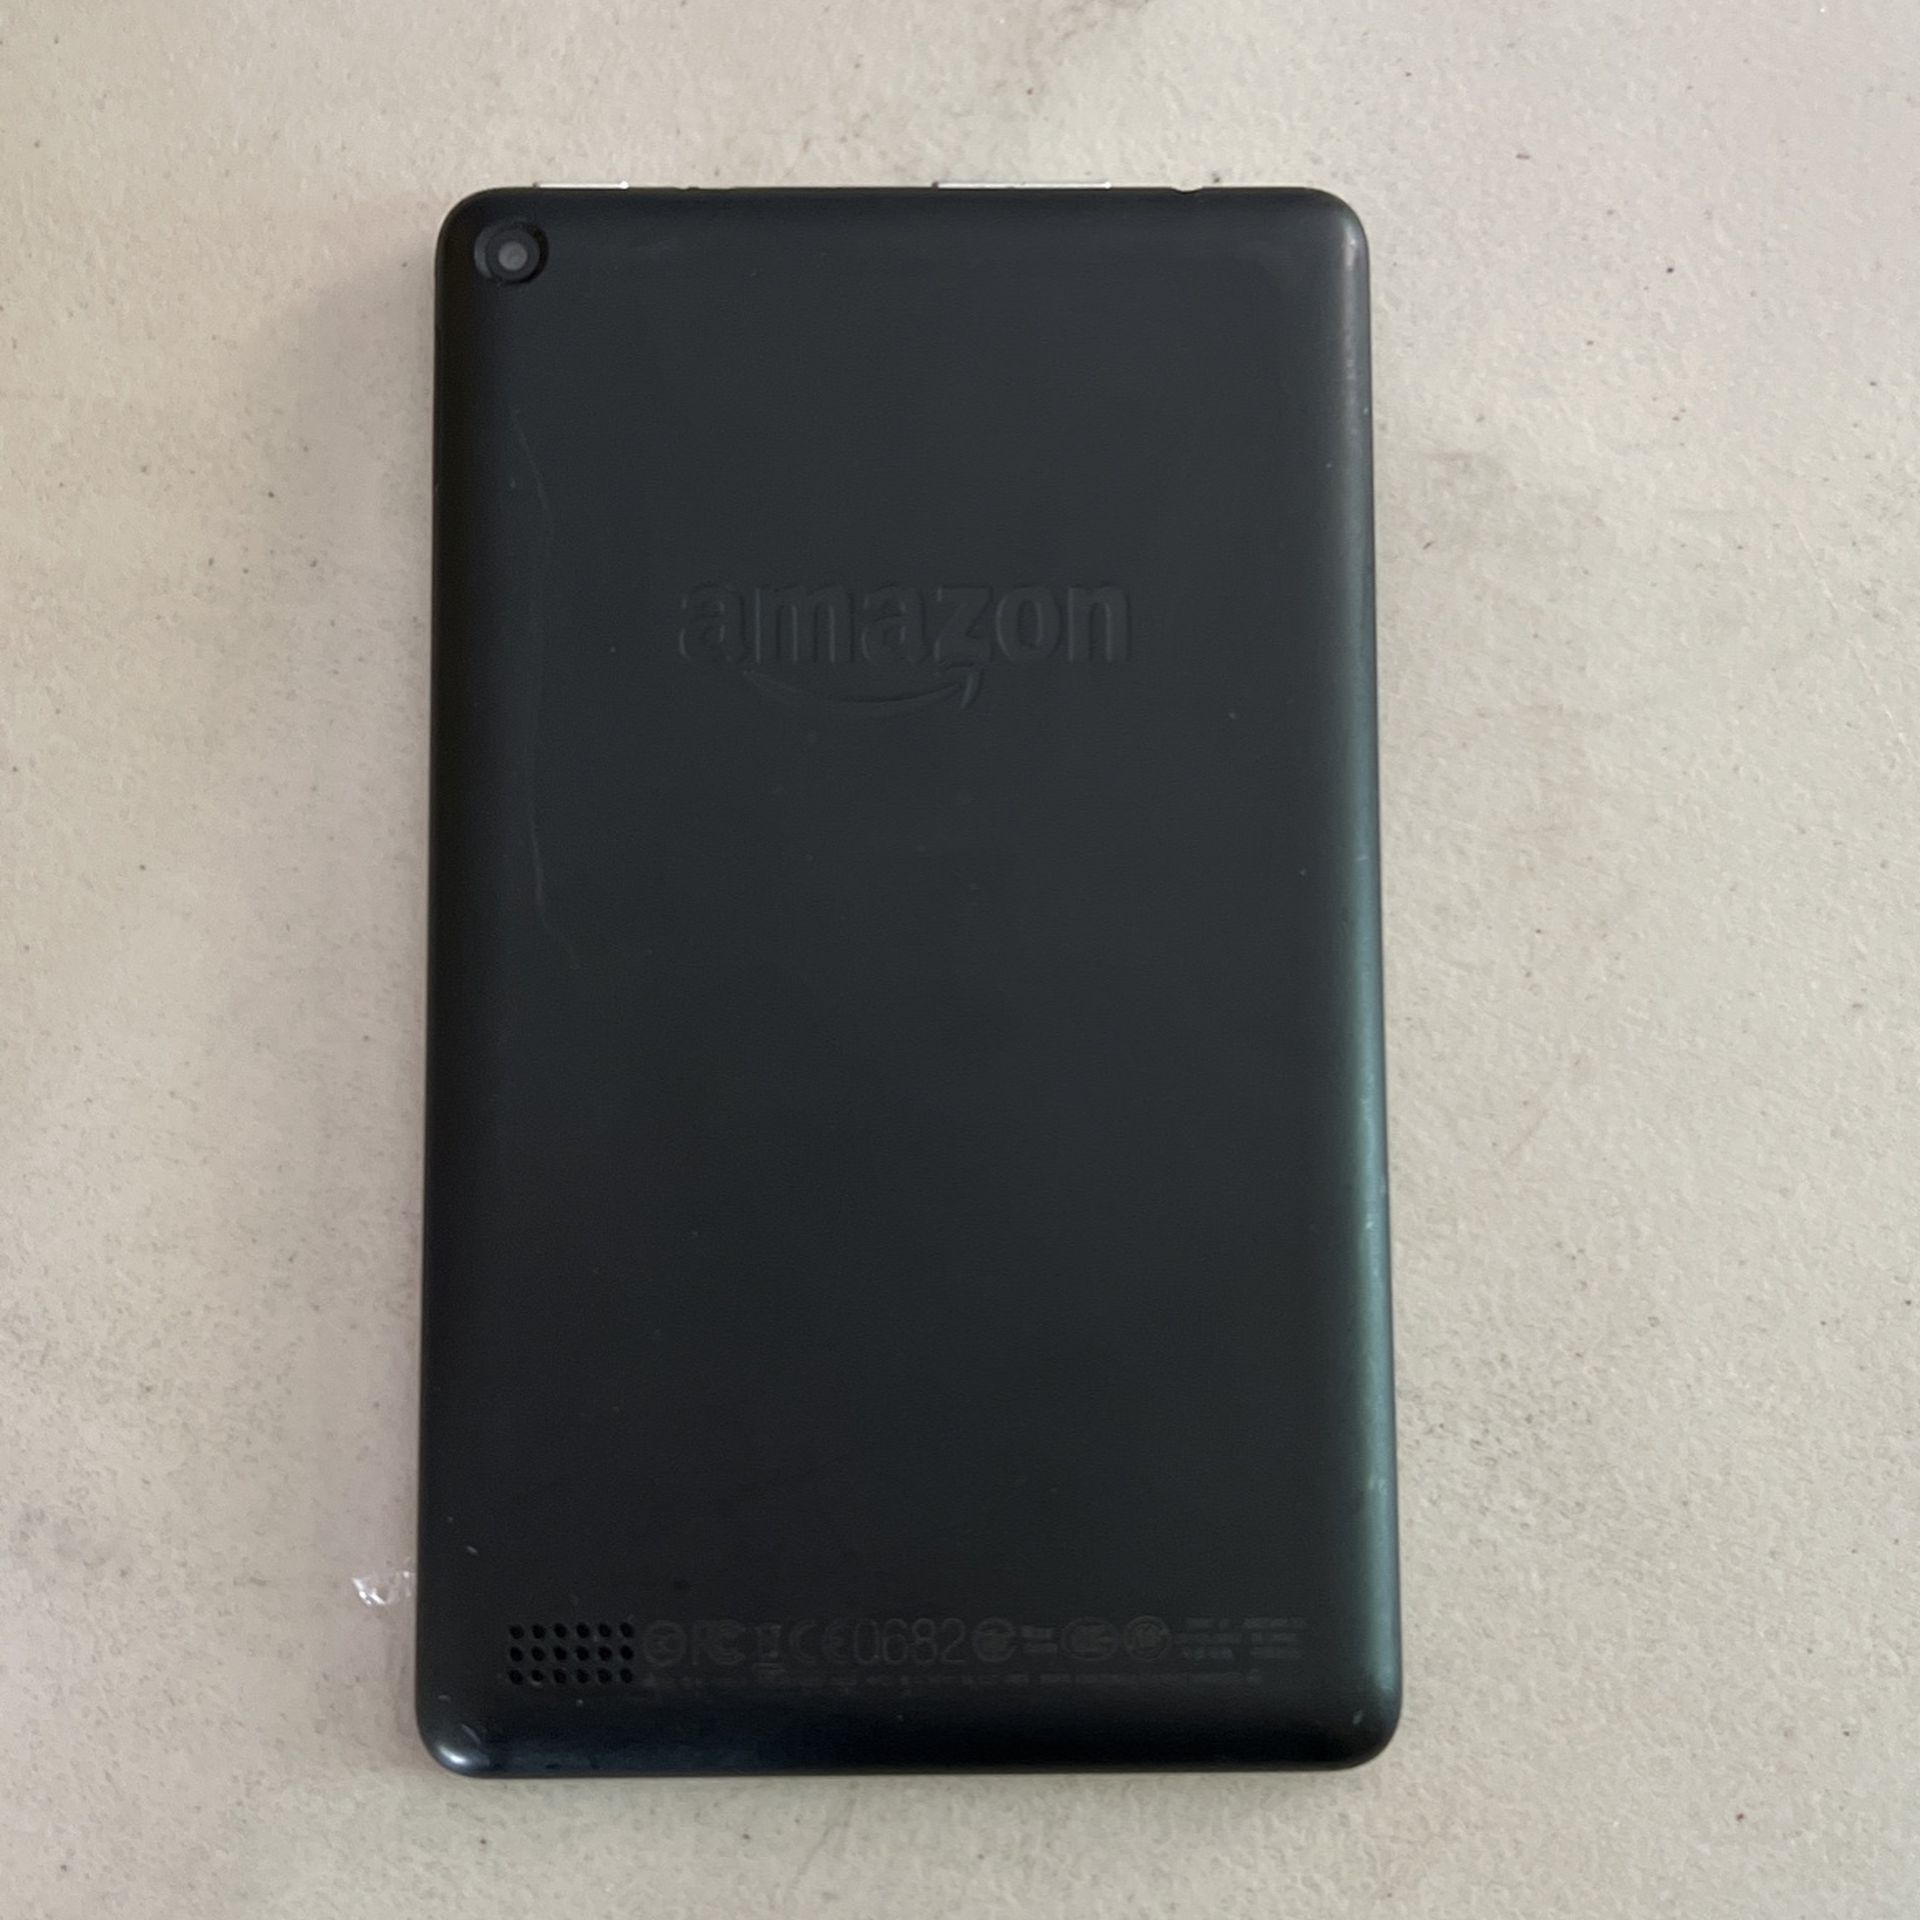 Amazon Fire Kindle 7